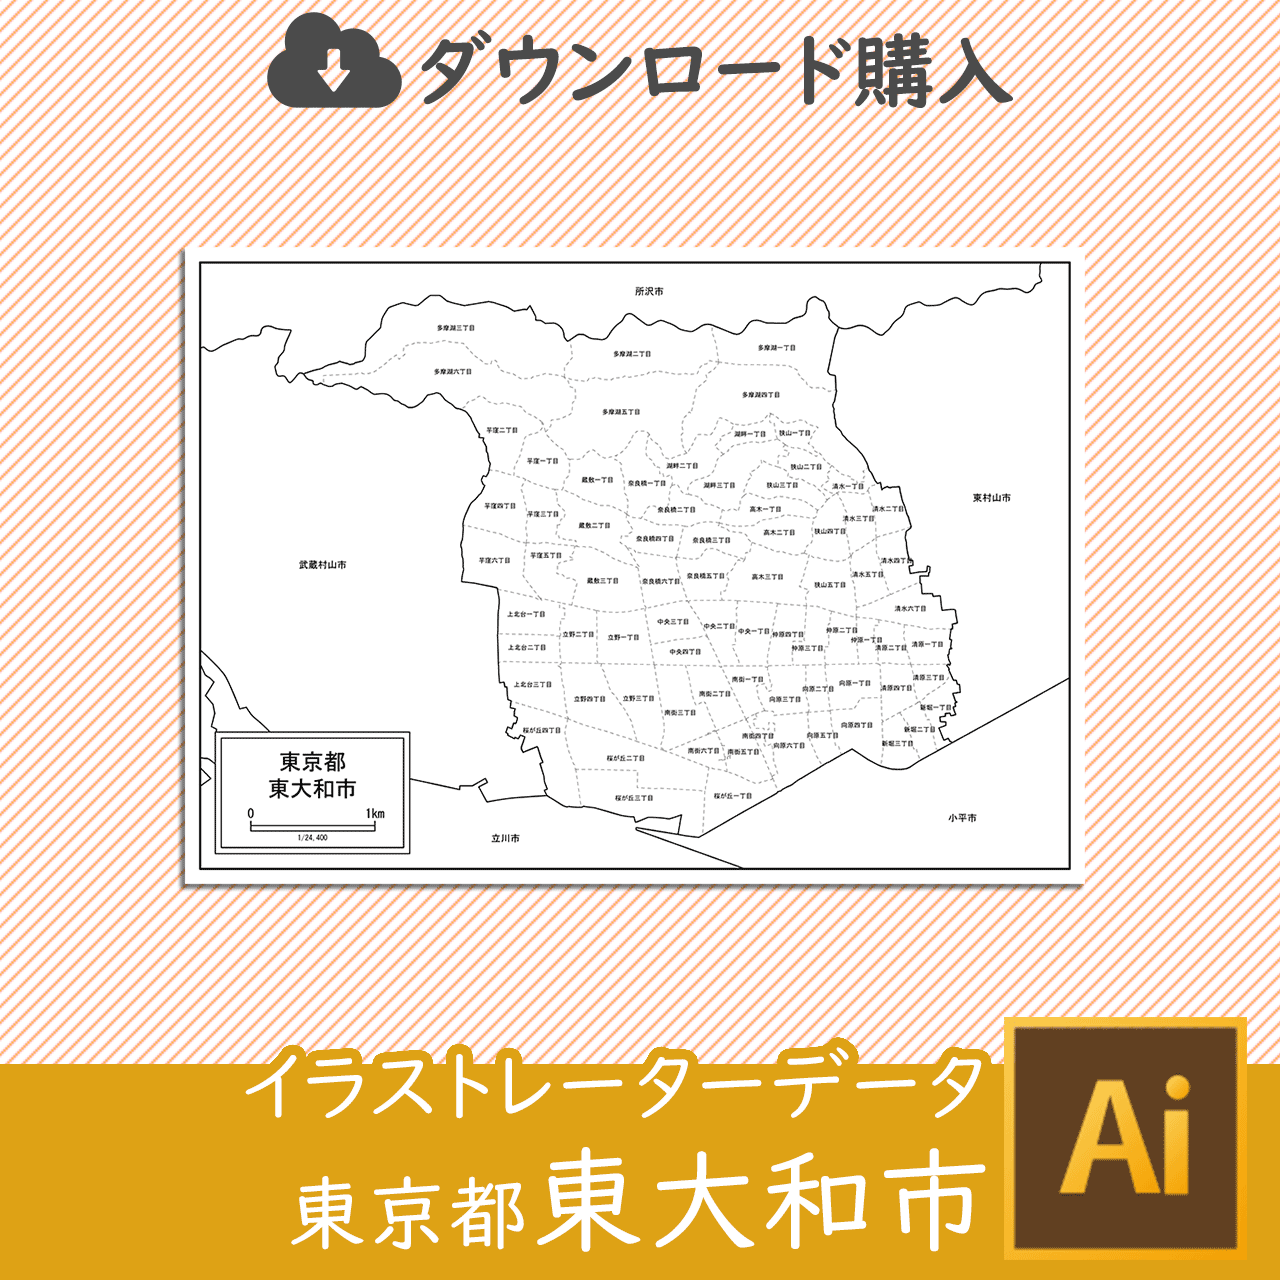 東大和市のaiデータのサムネイル画像